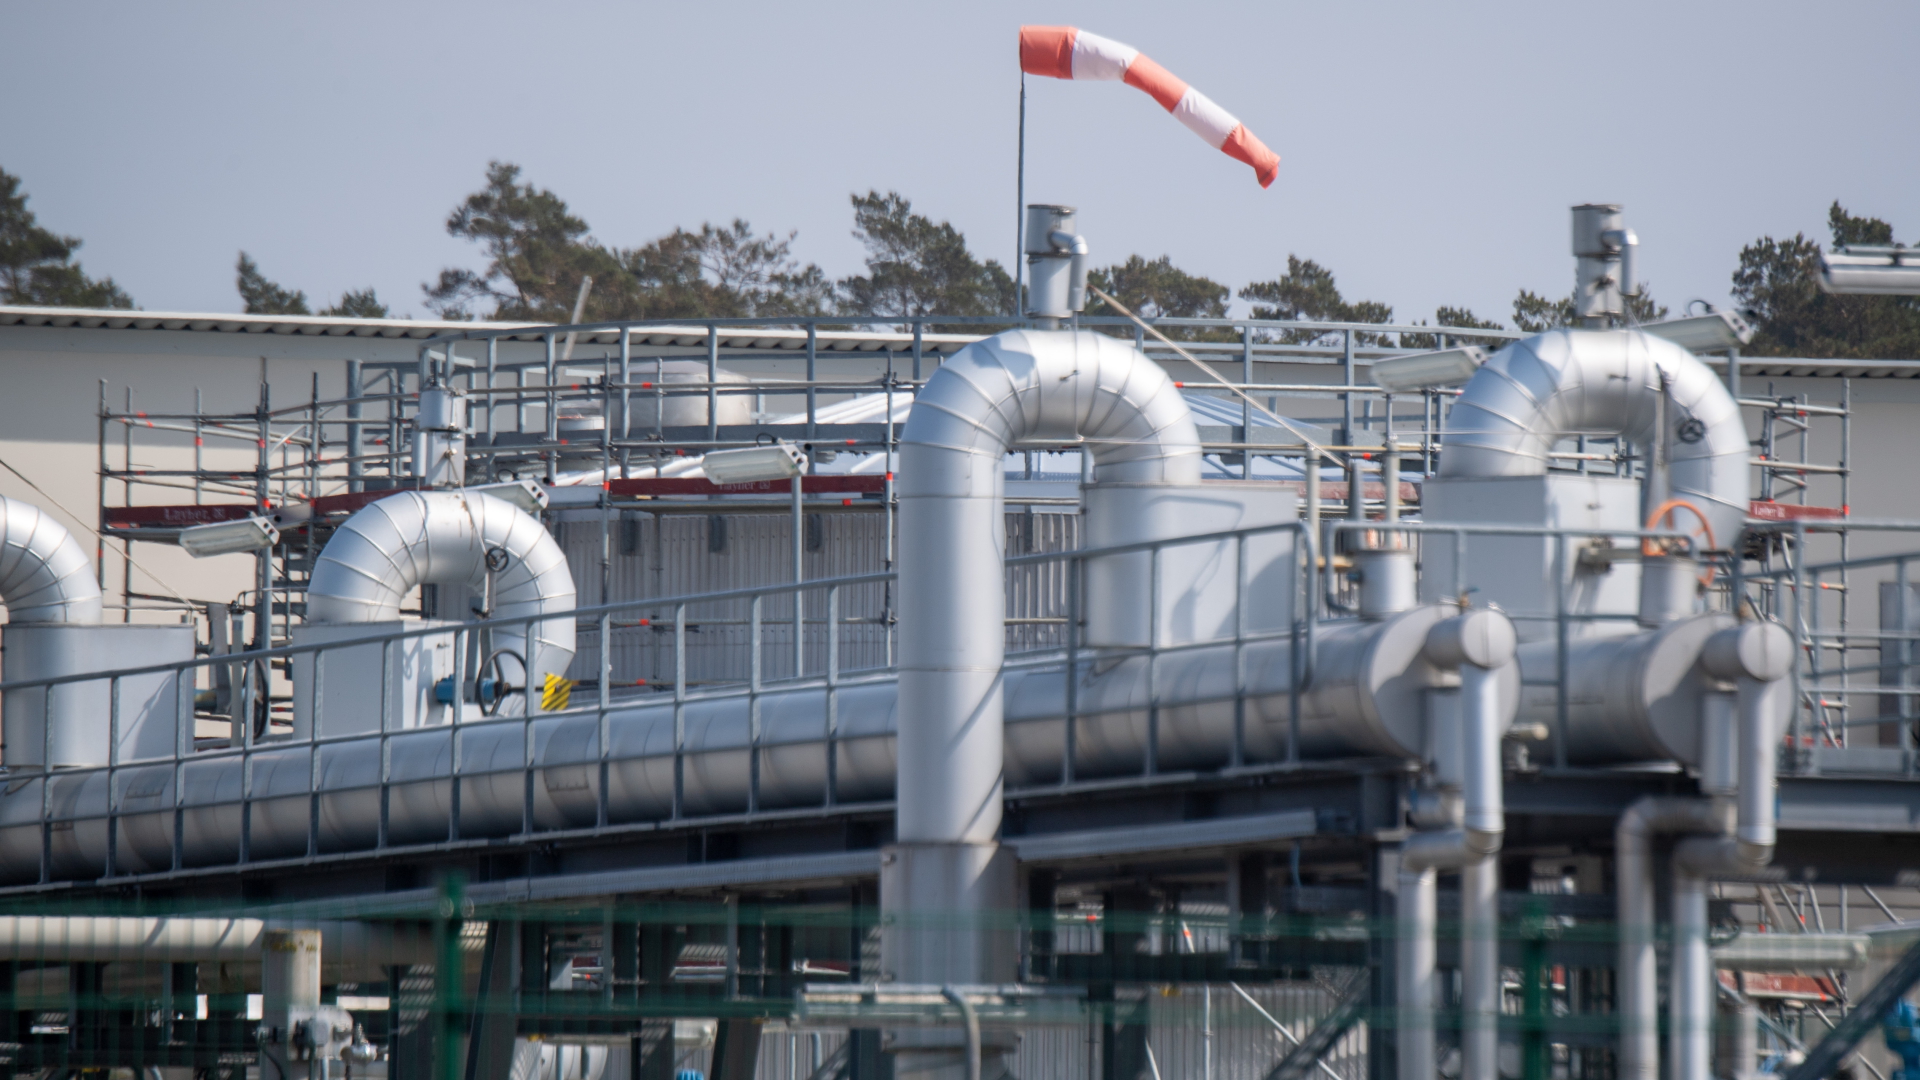 Blick auf Rohrsysteme und Absperrvorrichtungen in der Gasempfangsstation der Ostseepipeline Nord Stream 1 und der Übernahmestation der Ferngasleitung OPAL (Ostsee-Pipeline-Anbindungsleitung).  | dpa